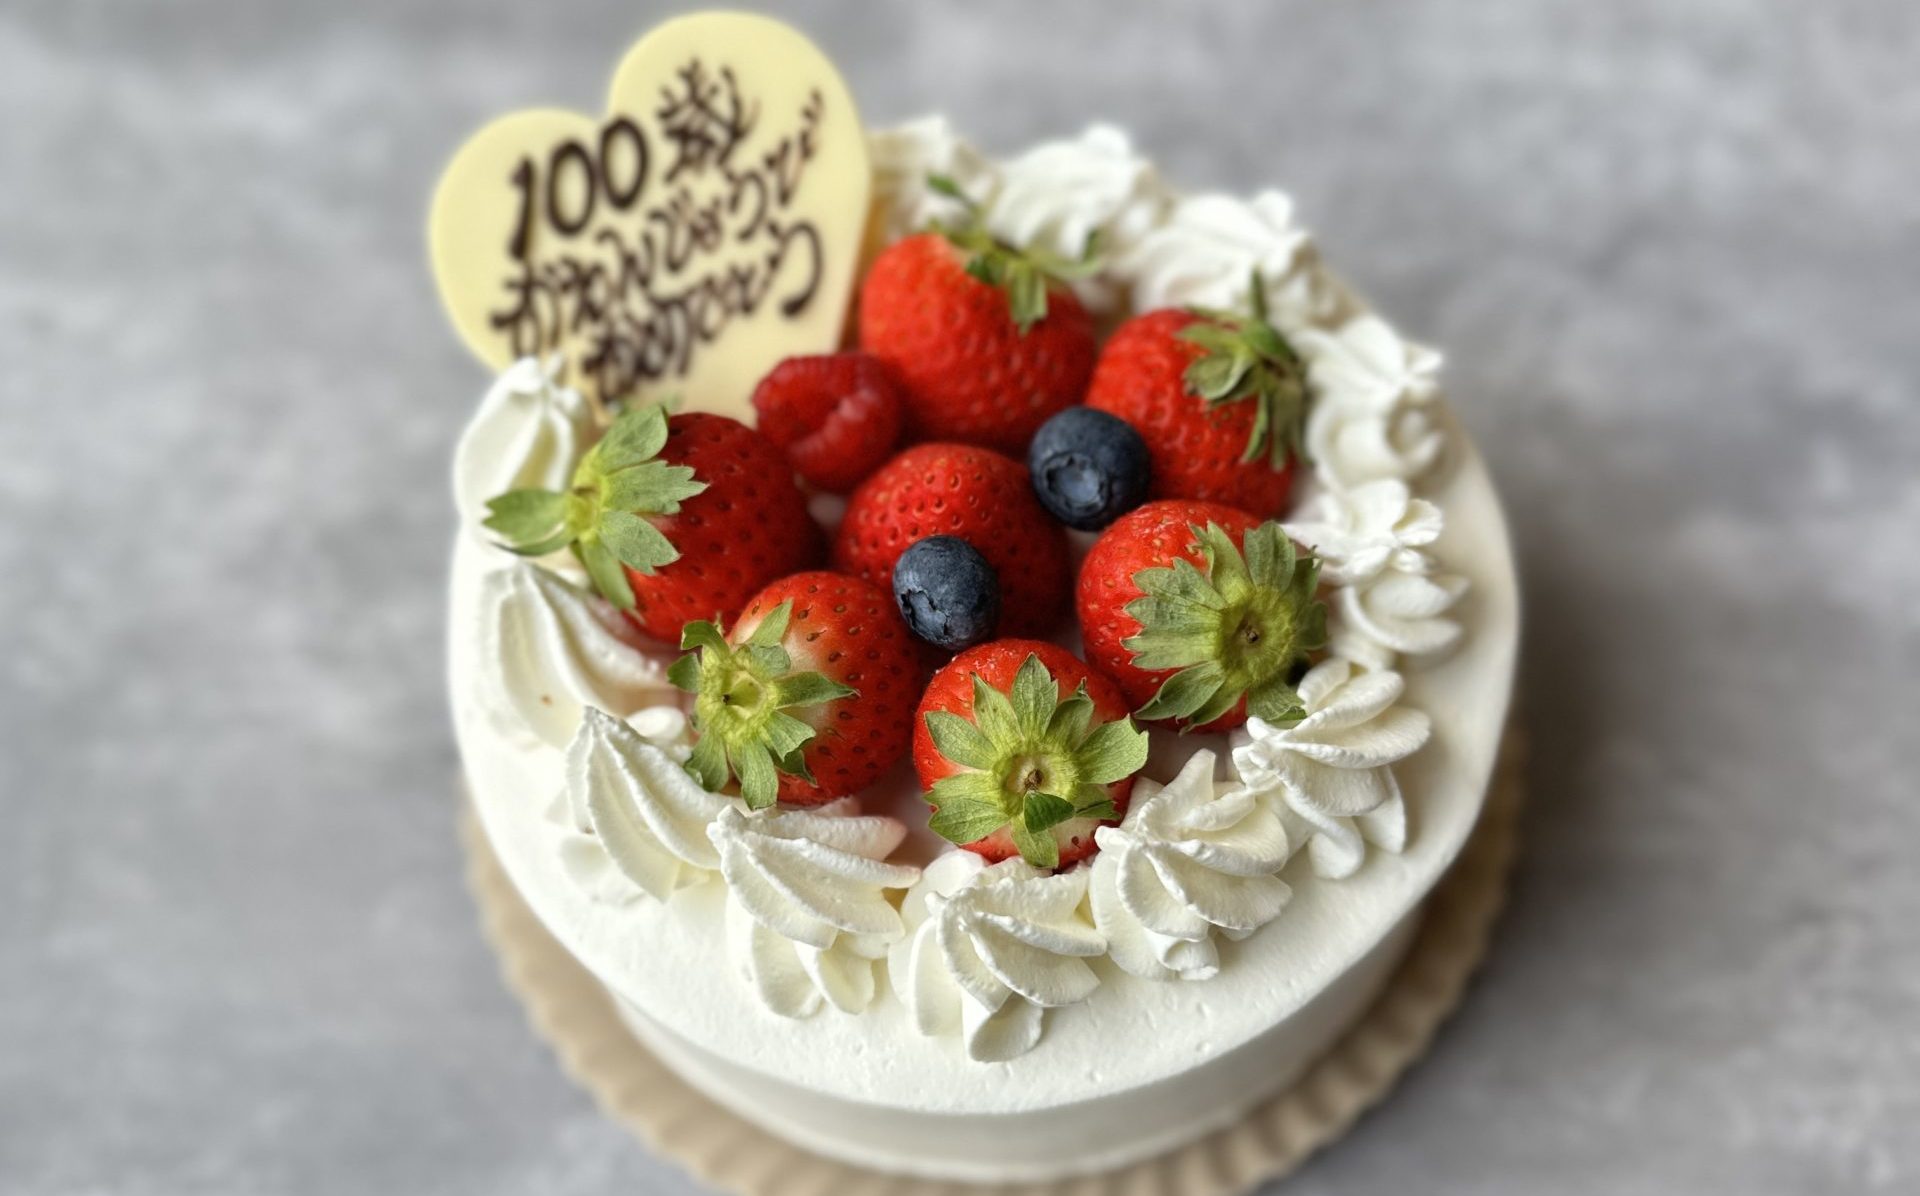 札幌バースデーケーキ店で100歳の誕生日をお祝いする